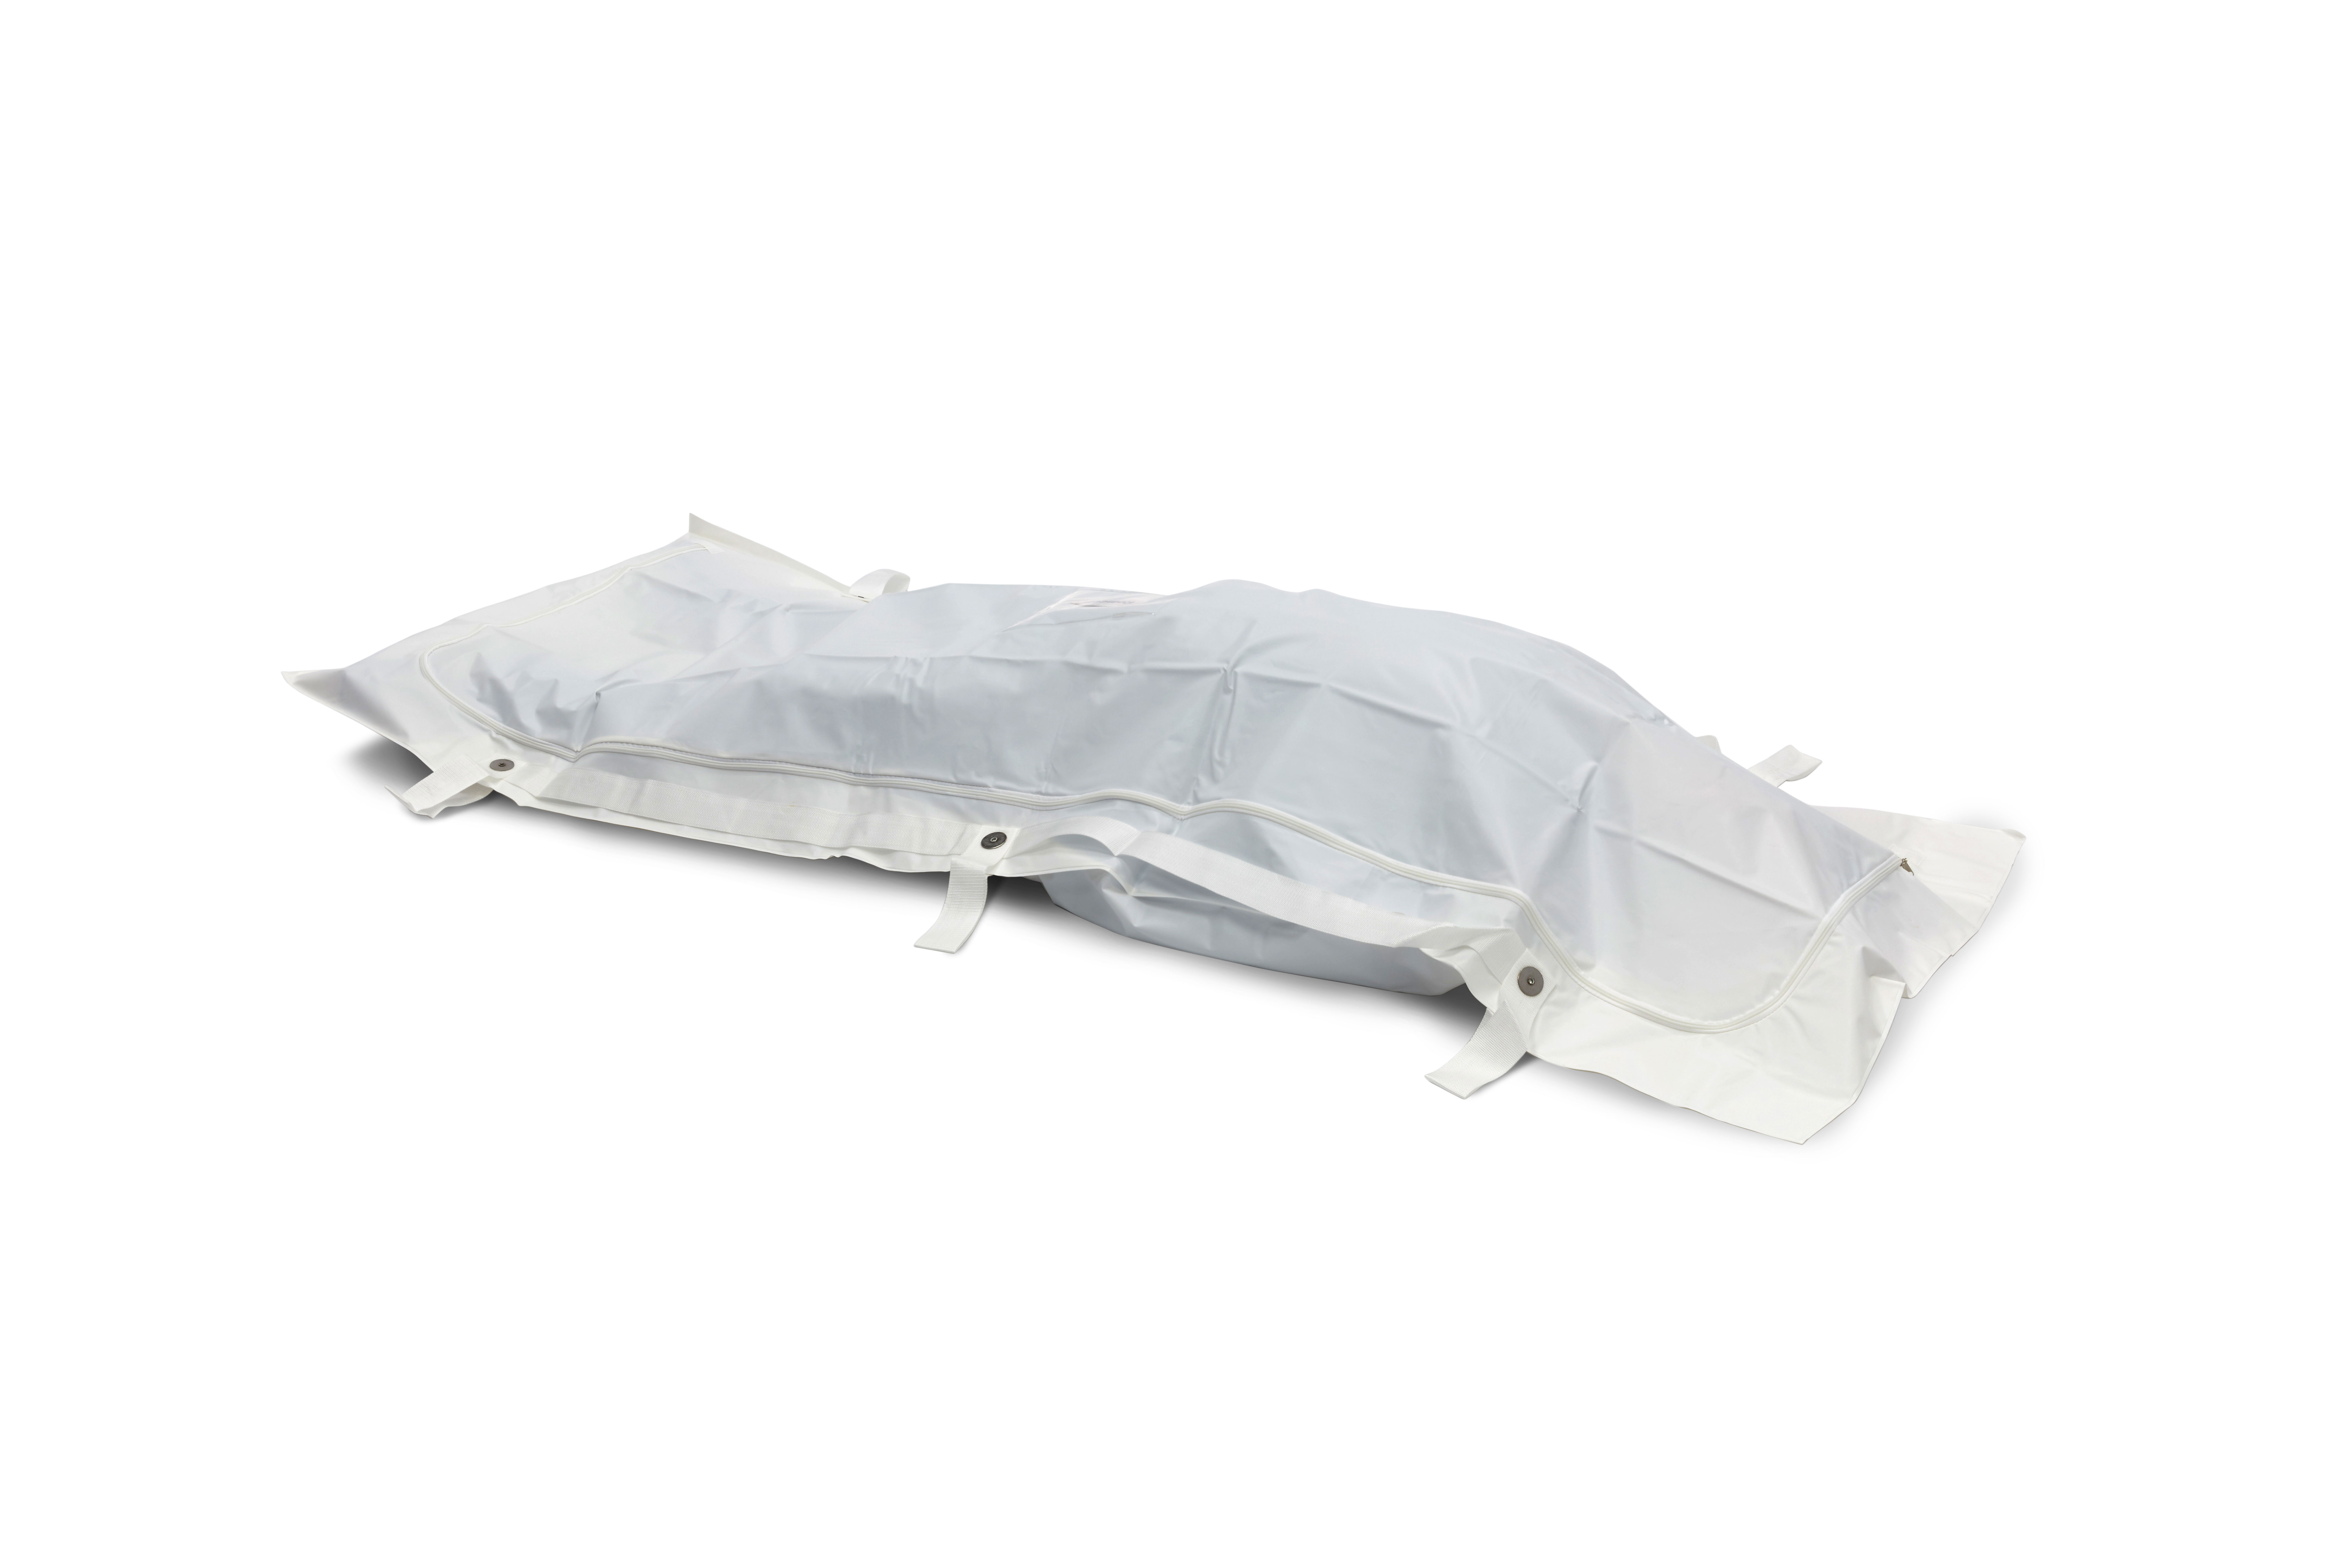 BODYBAGS Sacchi per salme/mortuari in PEVA Romed, bianchi, 6 manici, 90 x 230 cm, per pezzo in un sacchetto di polietilene, 20 pezzi per collo.